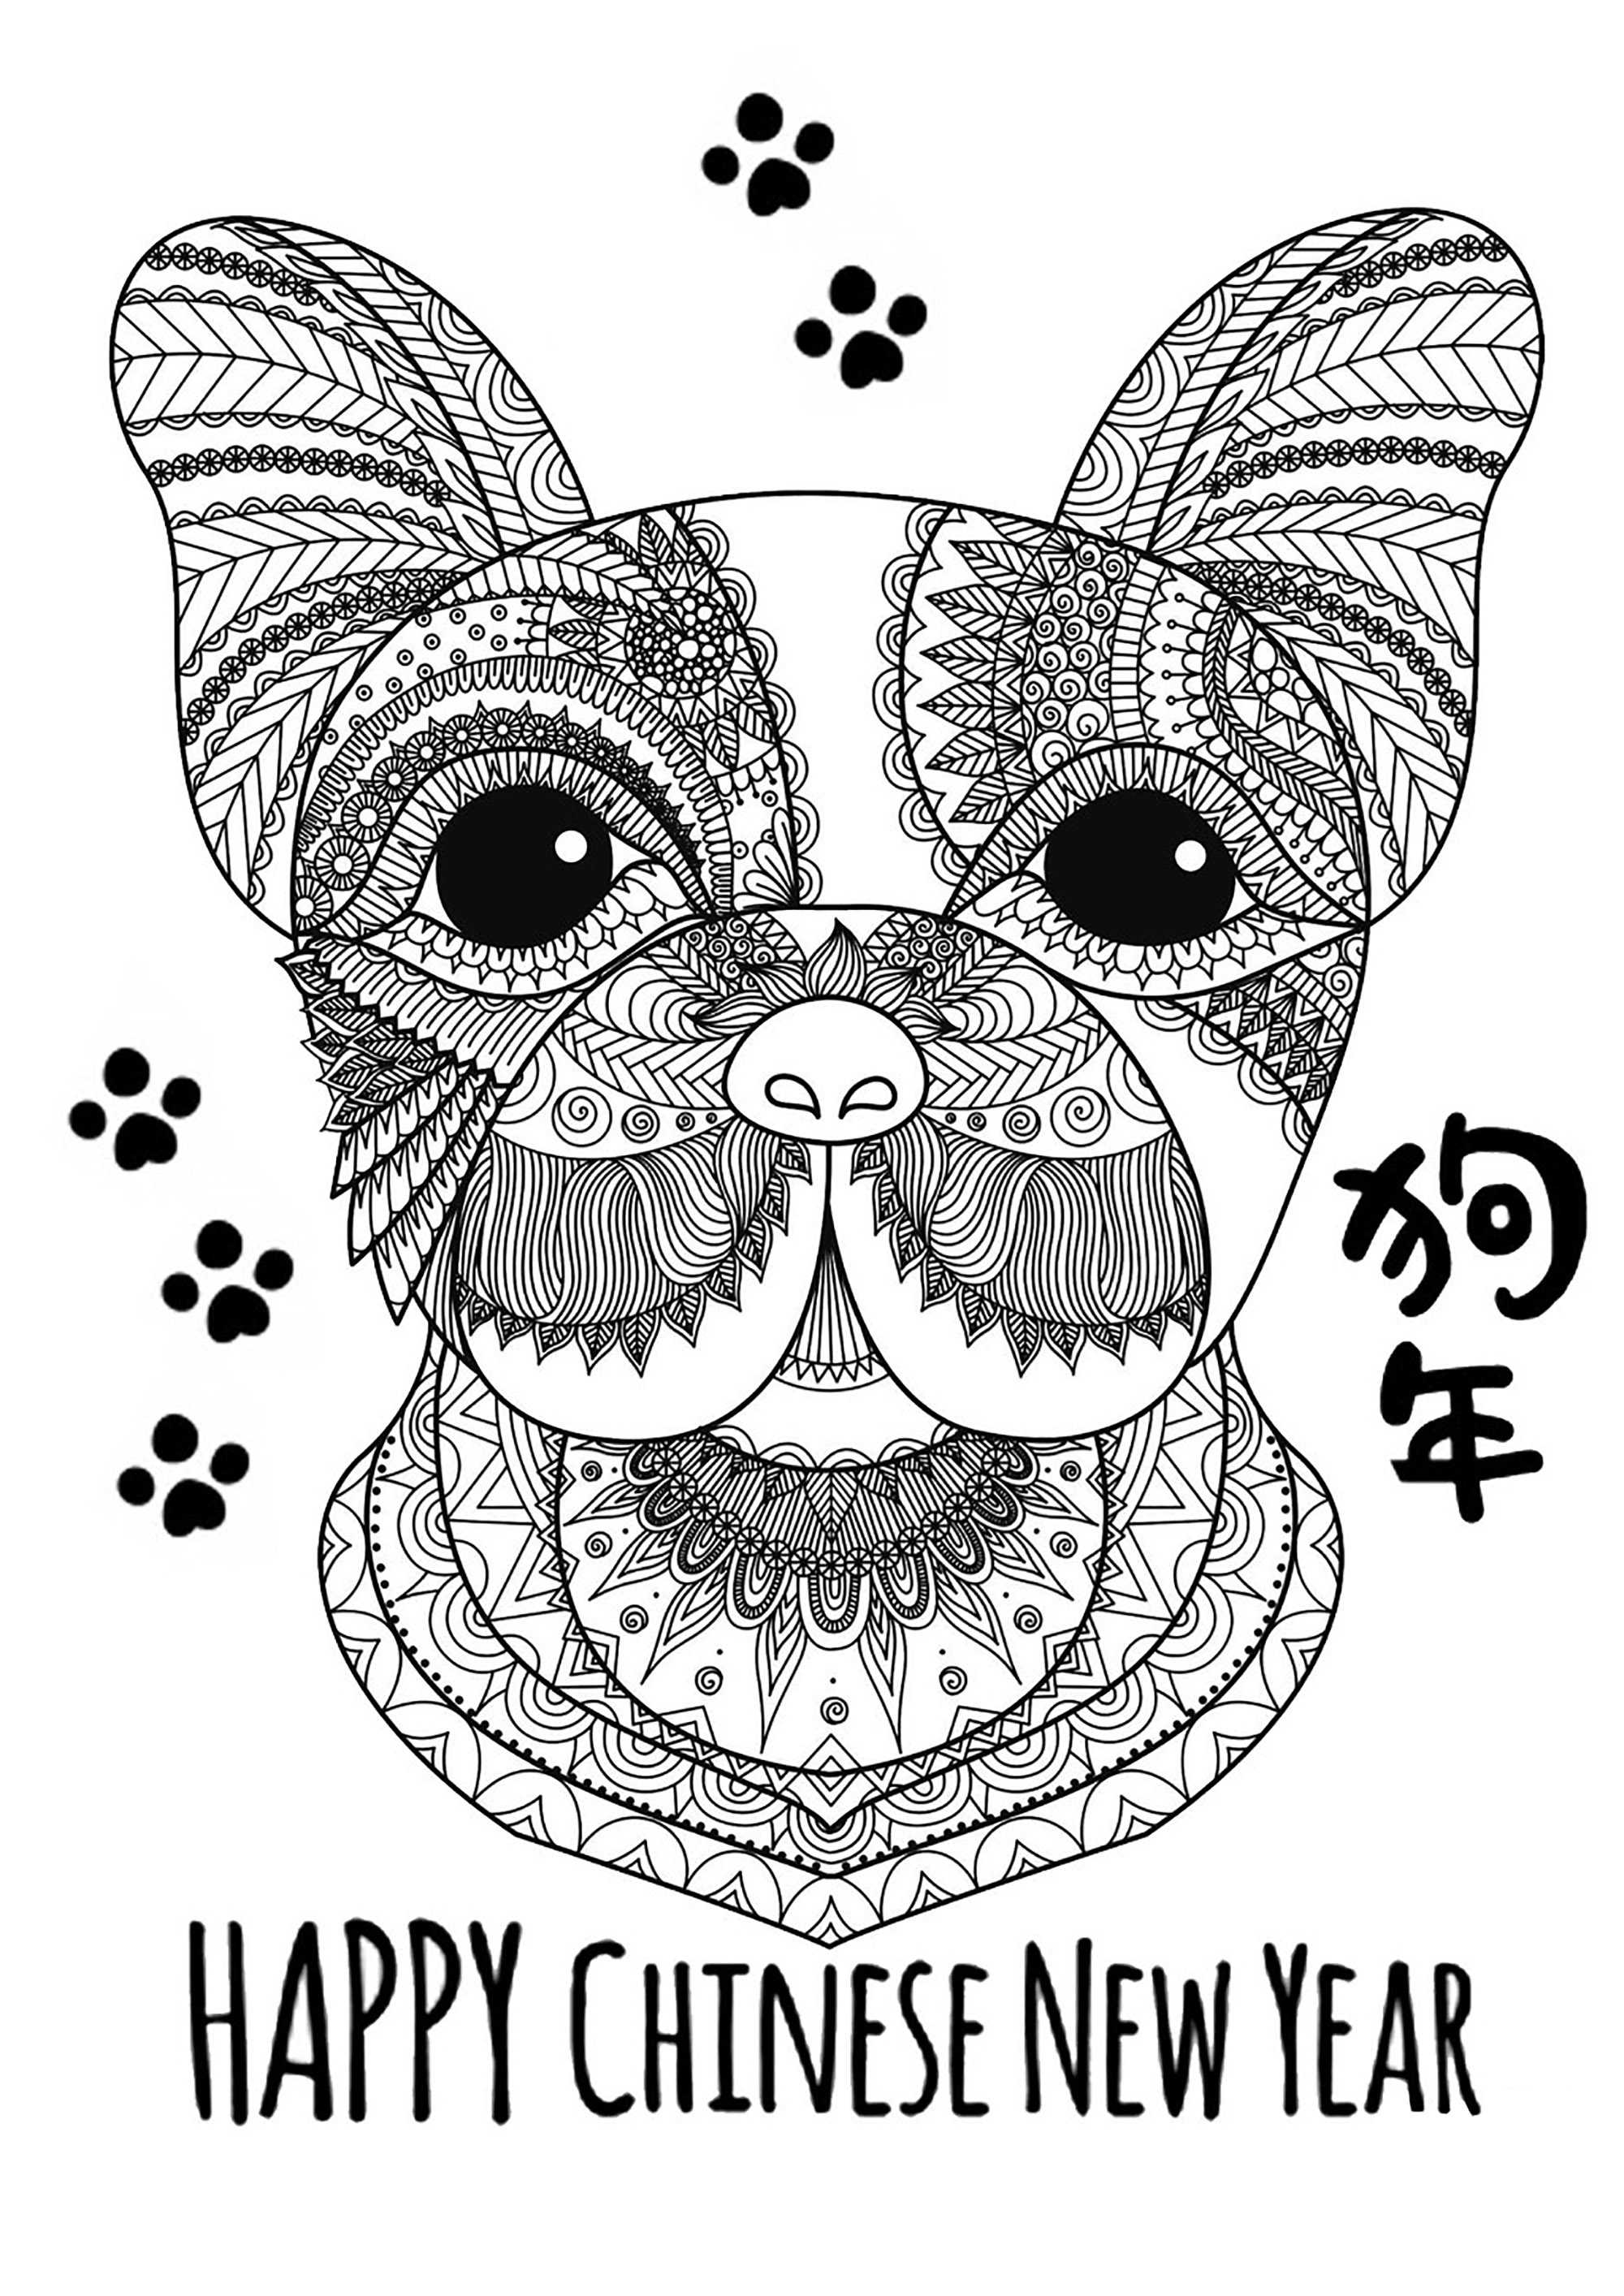 Happy Chinese New Year ! (Year of the Dog), Artist : Bimdeedee   Source : 123rf